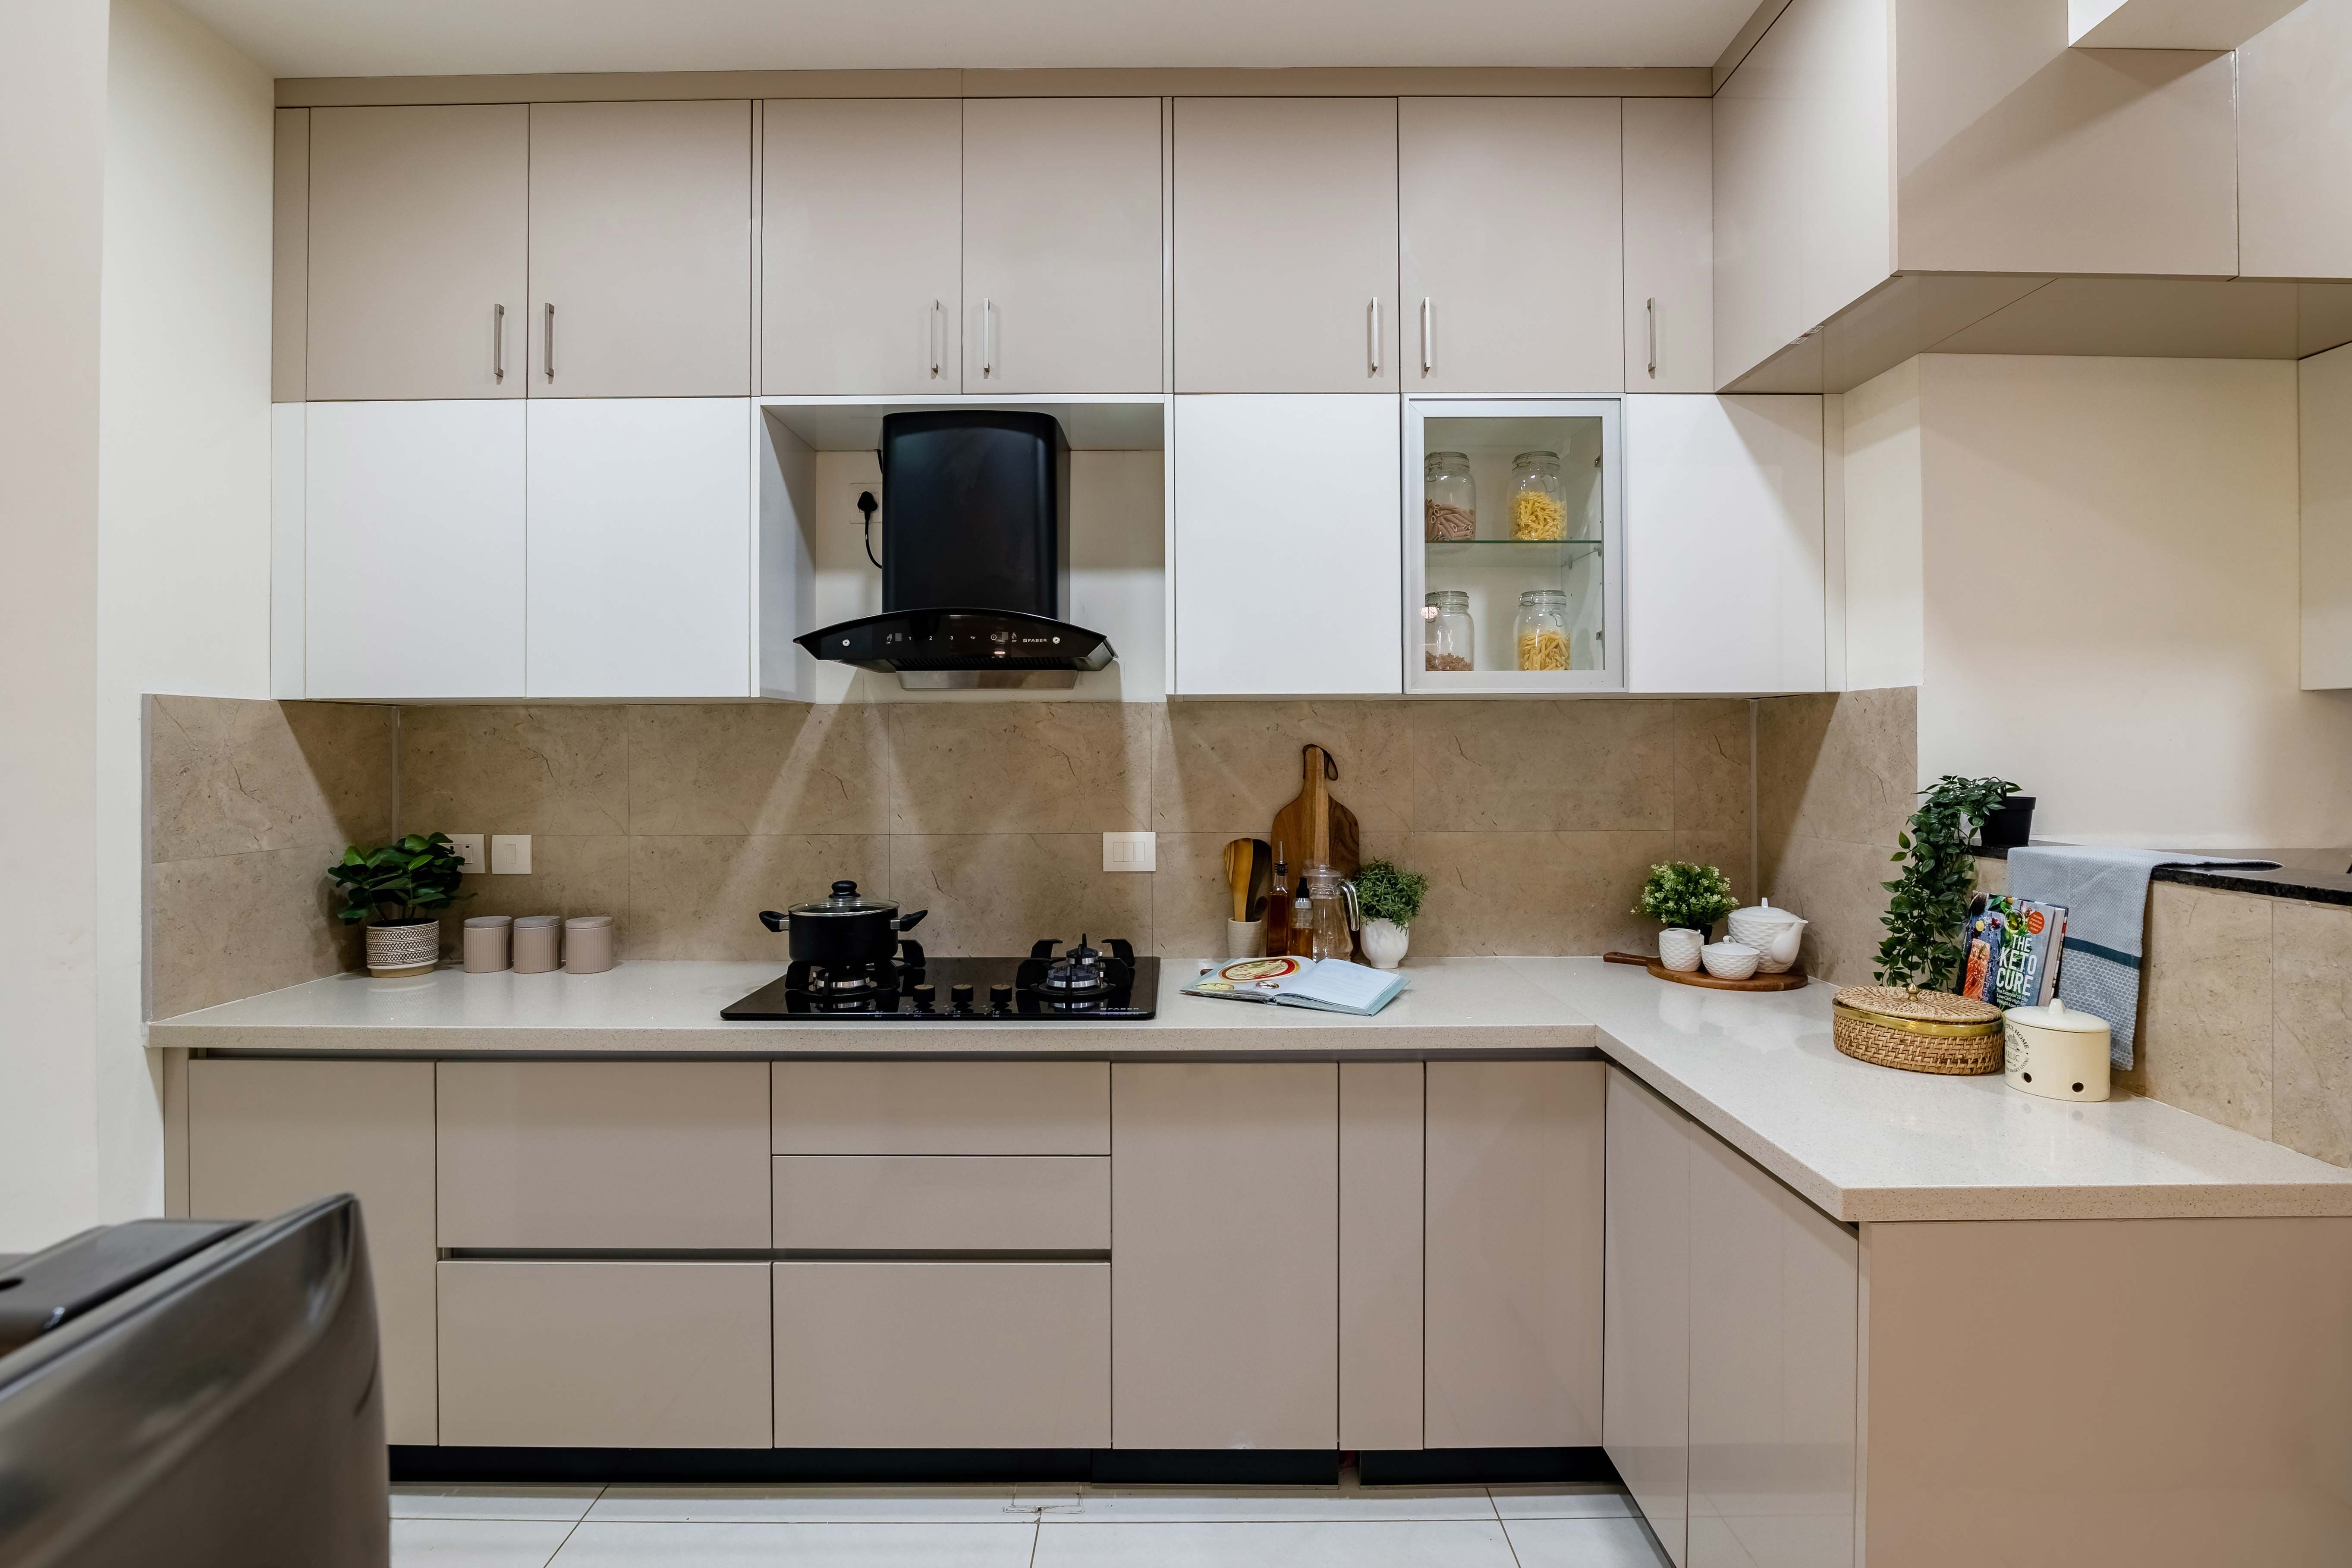 Modern Modular L-Shaped Kitchen Design With Loft Storage